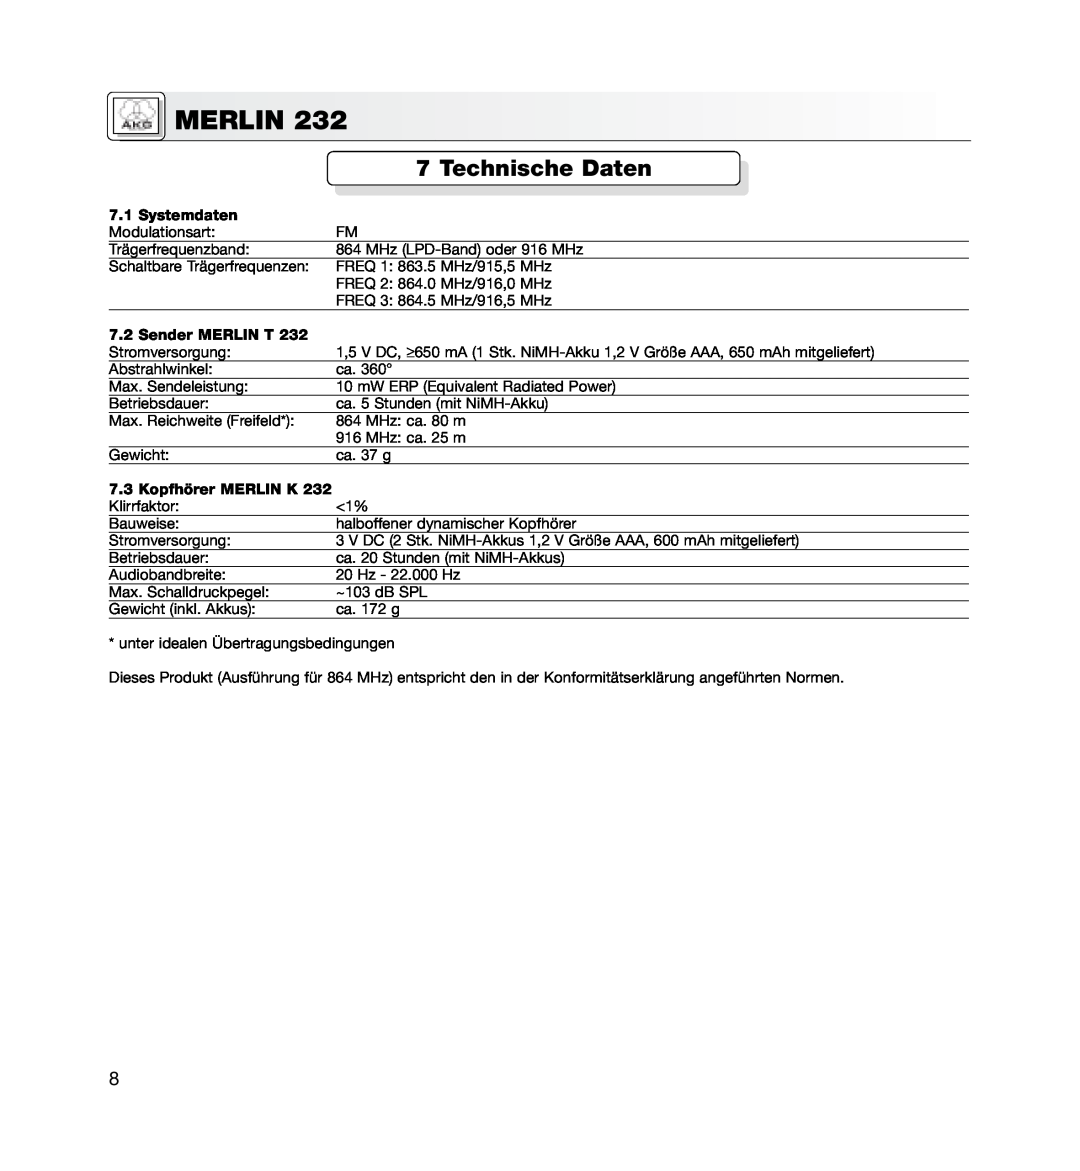 AKG Acoustics MERLIN 232 manual Technische Daten, Systemdaten, Sender MERLIN T, 7.3Kopfhörer MERLIN K, Merlin 